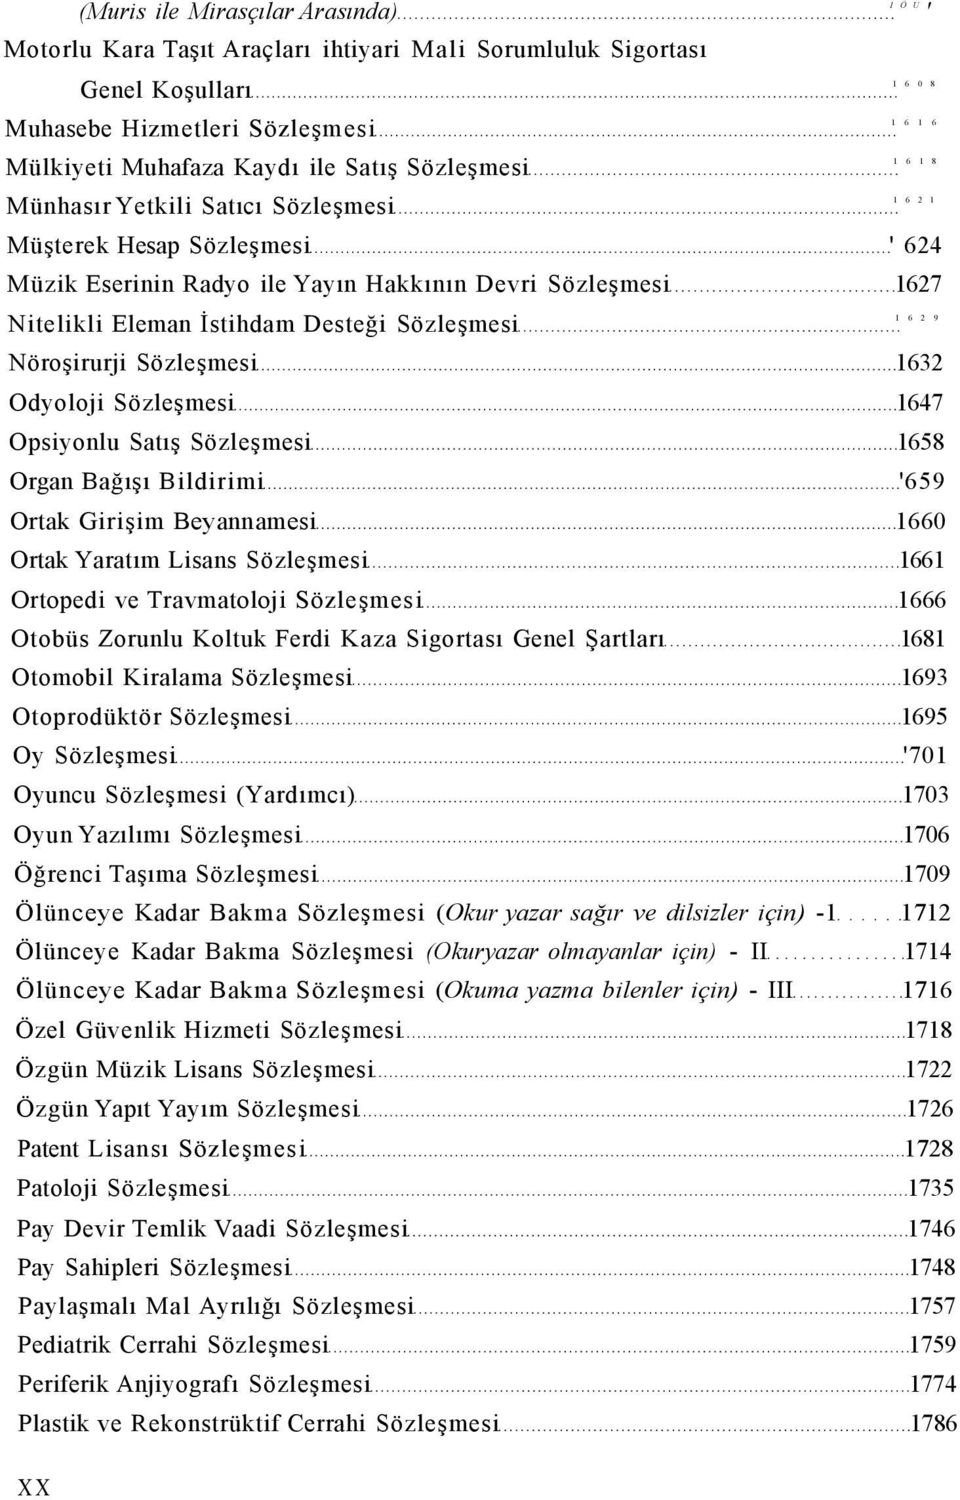 Odyoloji Sözleşmesi 1647 Opsiyonlu Satış Sözleşmesi 1658 Organ Bağışı Bildirimi 659 Ortak Girişim Beyannamesi 1660 Ortak Yaratım Lisans Sözleşmesi 1661 Ortopedi ve Travmatoloji Sözleşmesi 1666 Otobüs